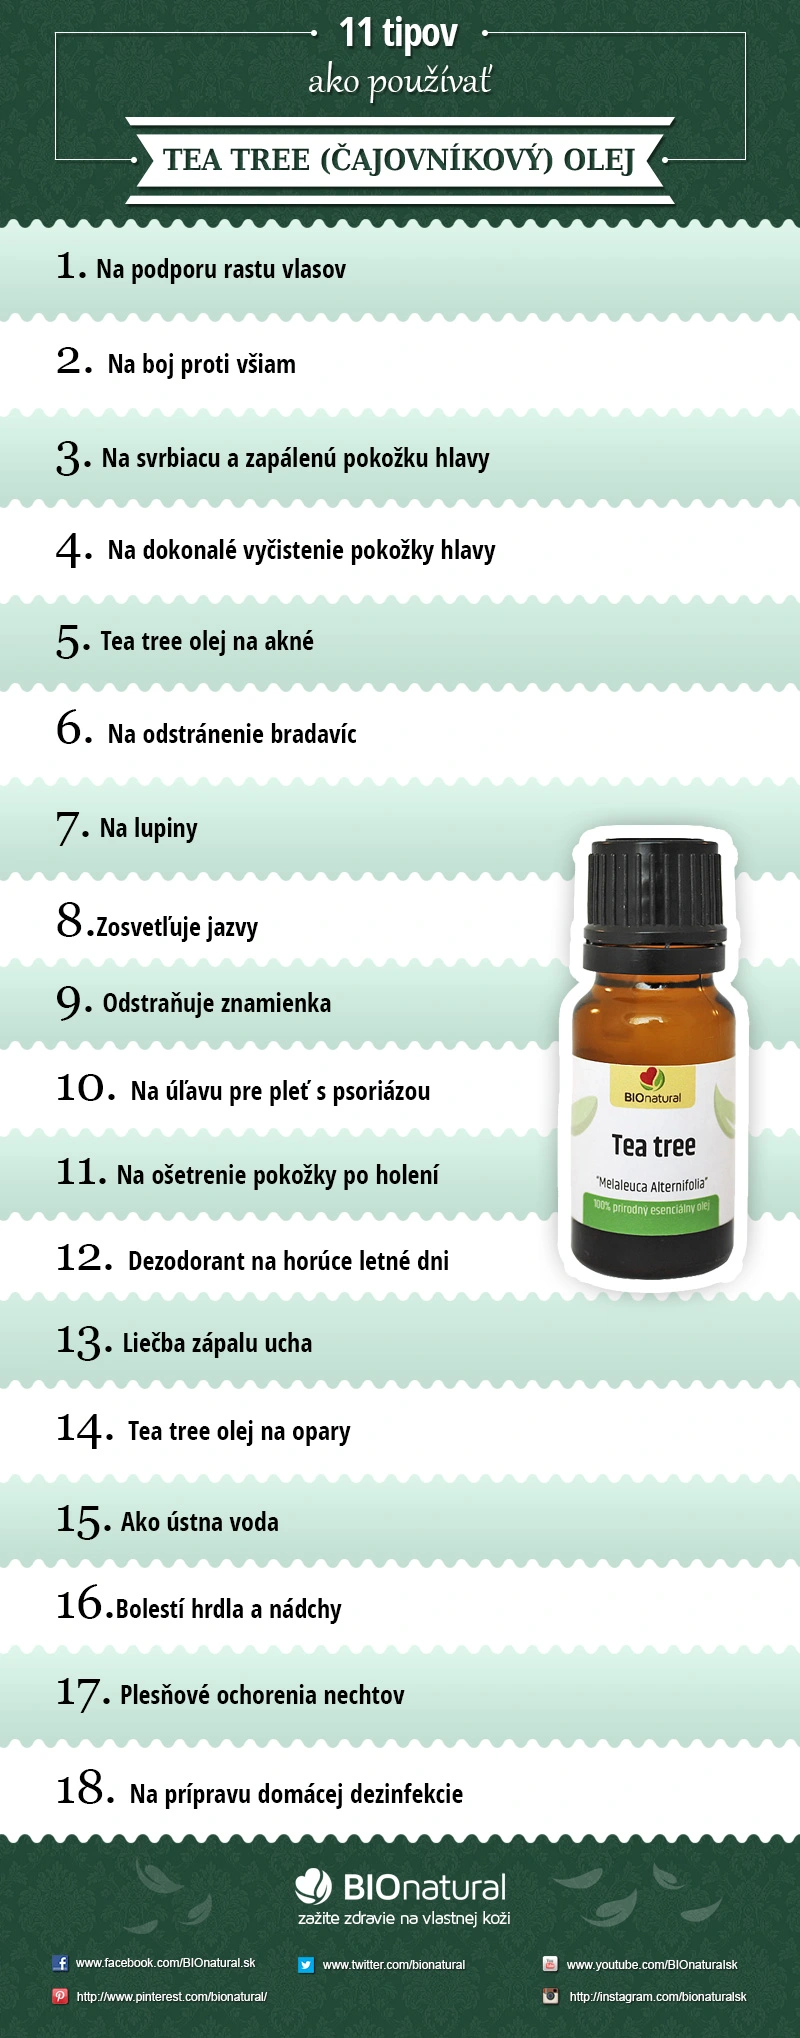 18 tipov ako používať tea tree (čajovníkový) olej